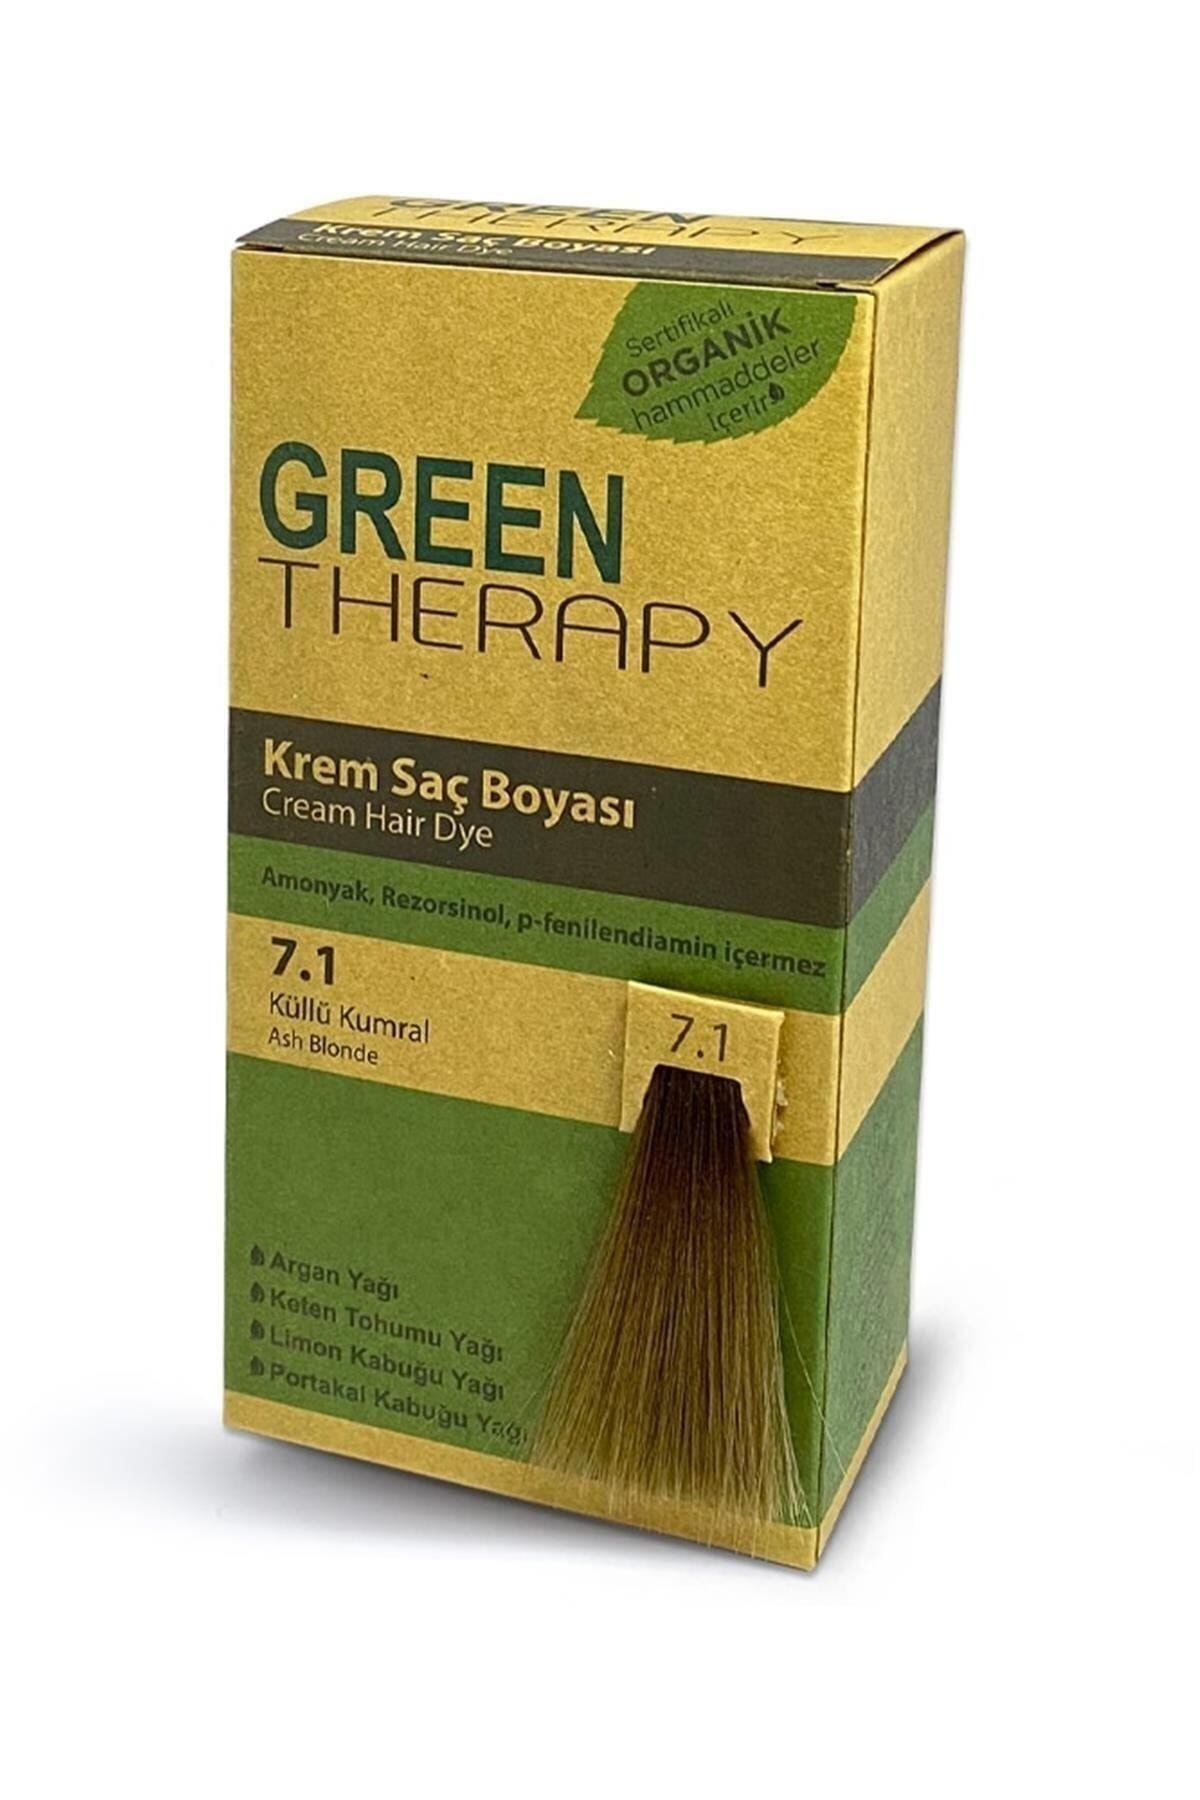 Green Therapy Krem Saç Boyası Argan Yağlı No:7.1 Küllü Kumral ,,natural1129